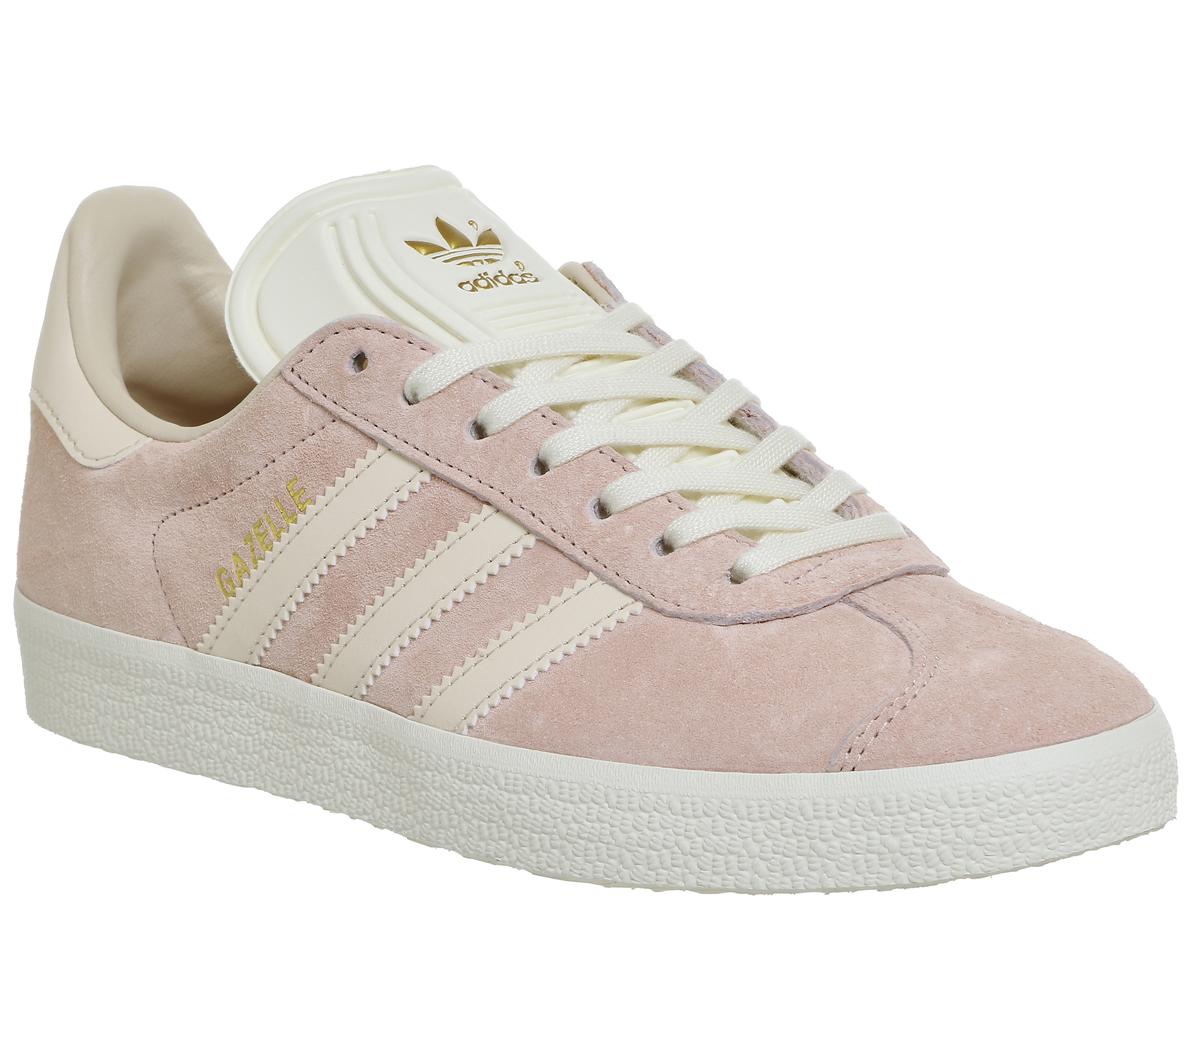 adidas gazelle vapour pink white